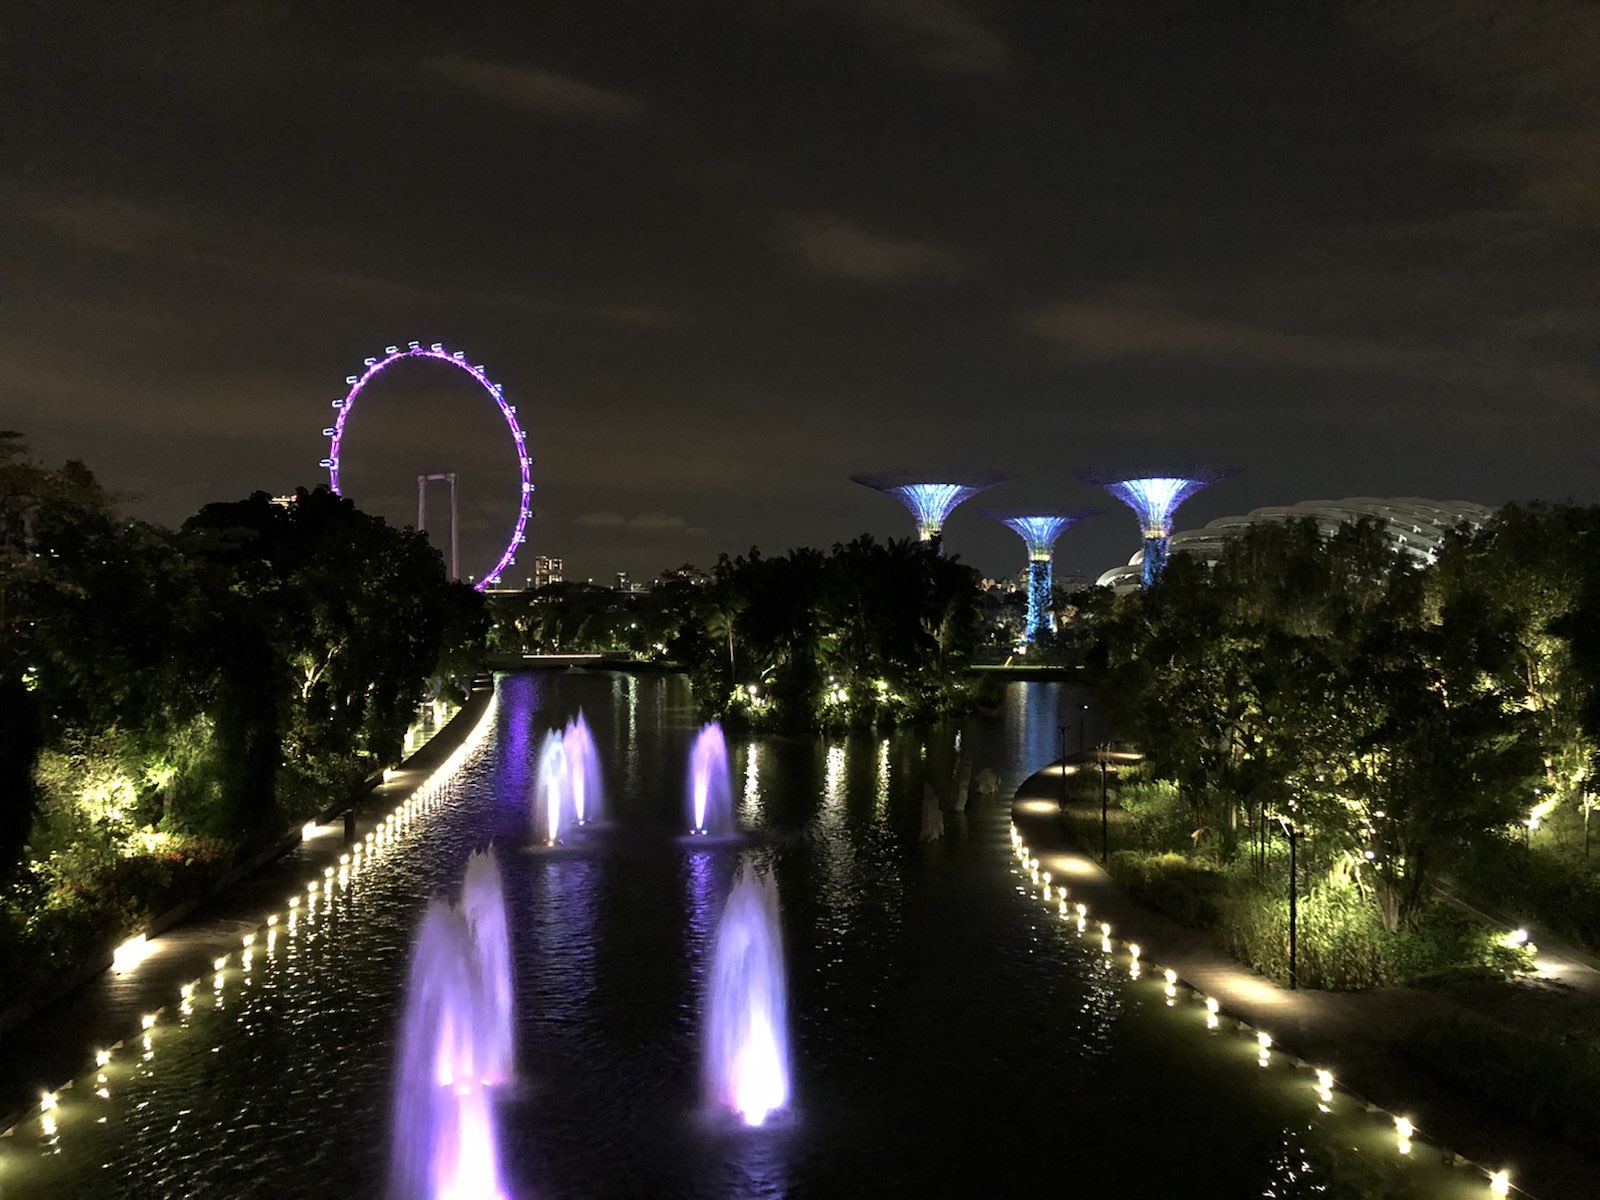 相比Singapore Zoo，河川生态园名气小很多，但它是一个以河川